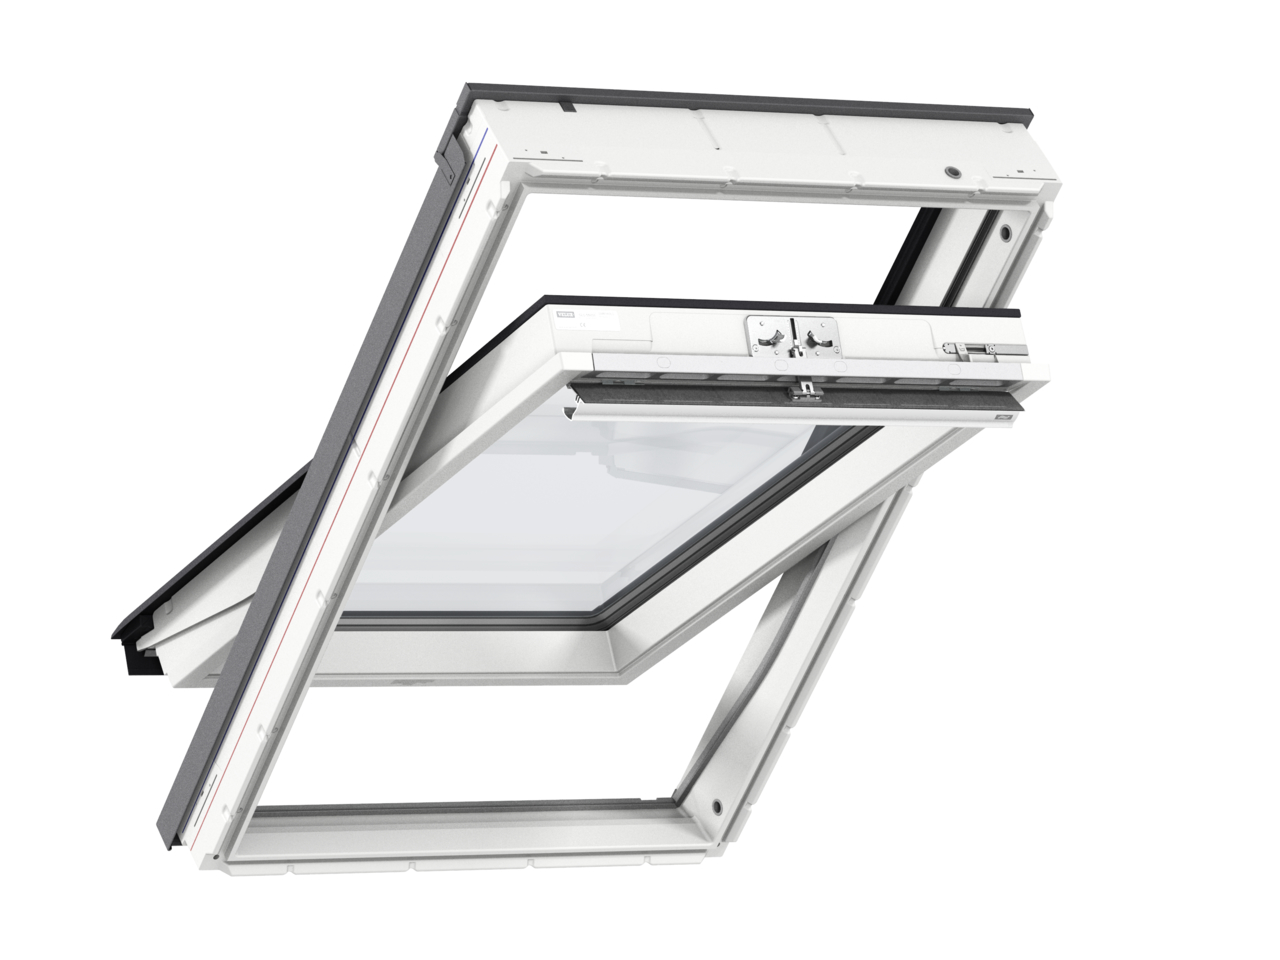 Мансардное двухкамерное белое окно Velux (Велюкс) GLU MK08 0061 78х140 см (ручка сверху), Деревянное мансардное окно в полиуретане с двухкамерным стеклопакетом GLU 0061 MK08 Окно 78*140 см, Velux